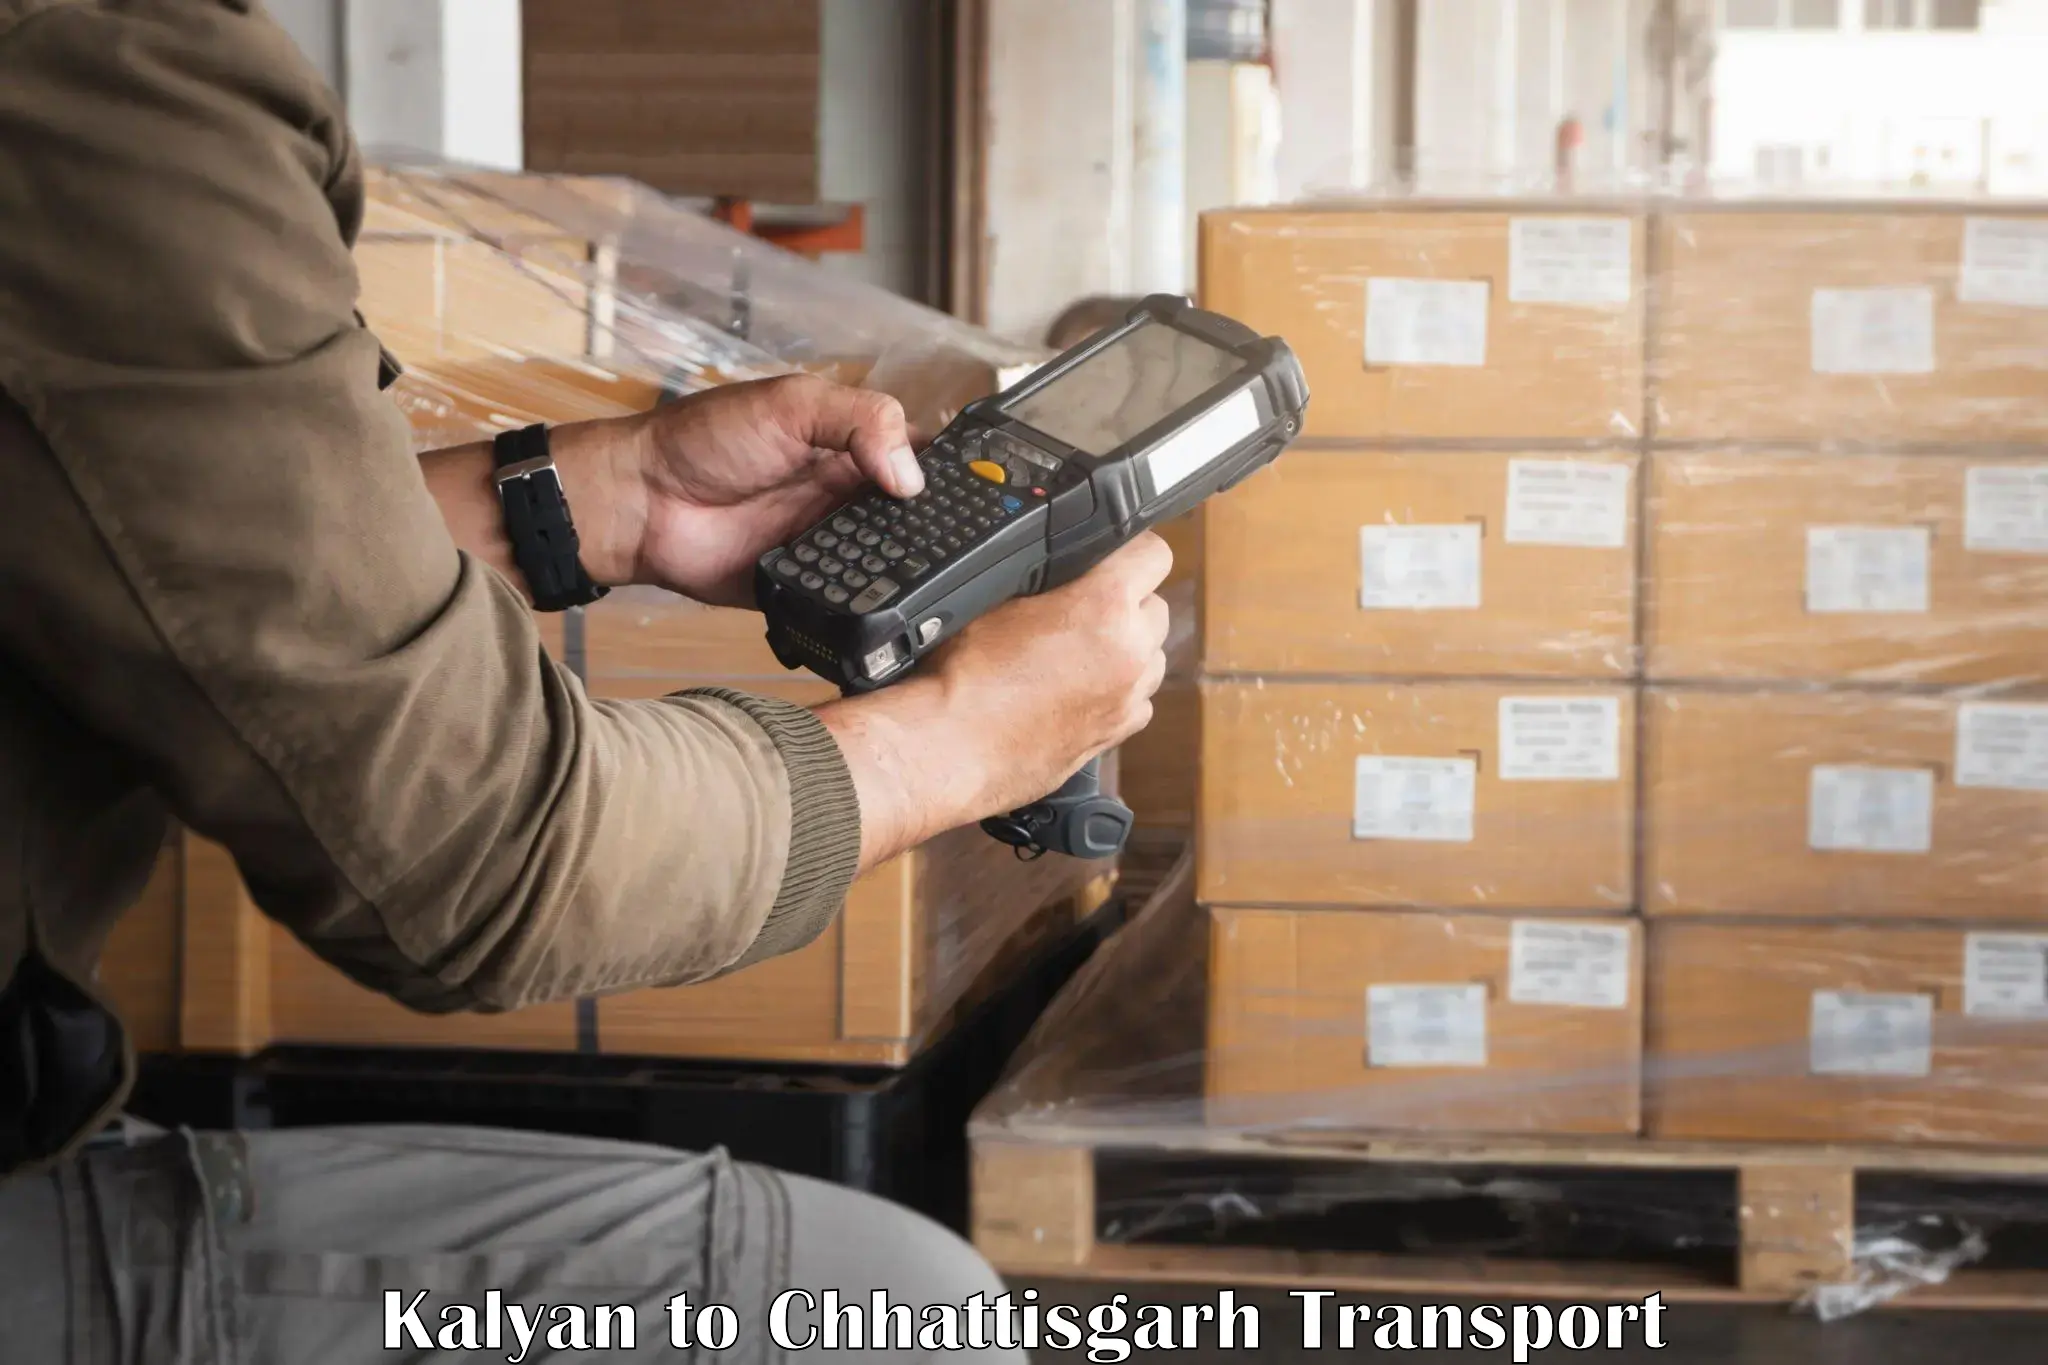 Nationwide transport services Kalyan to Sakti